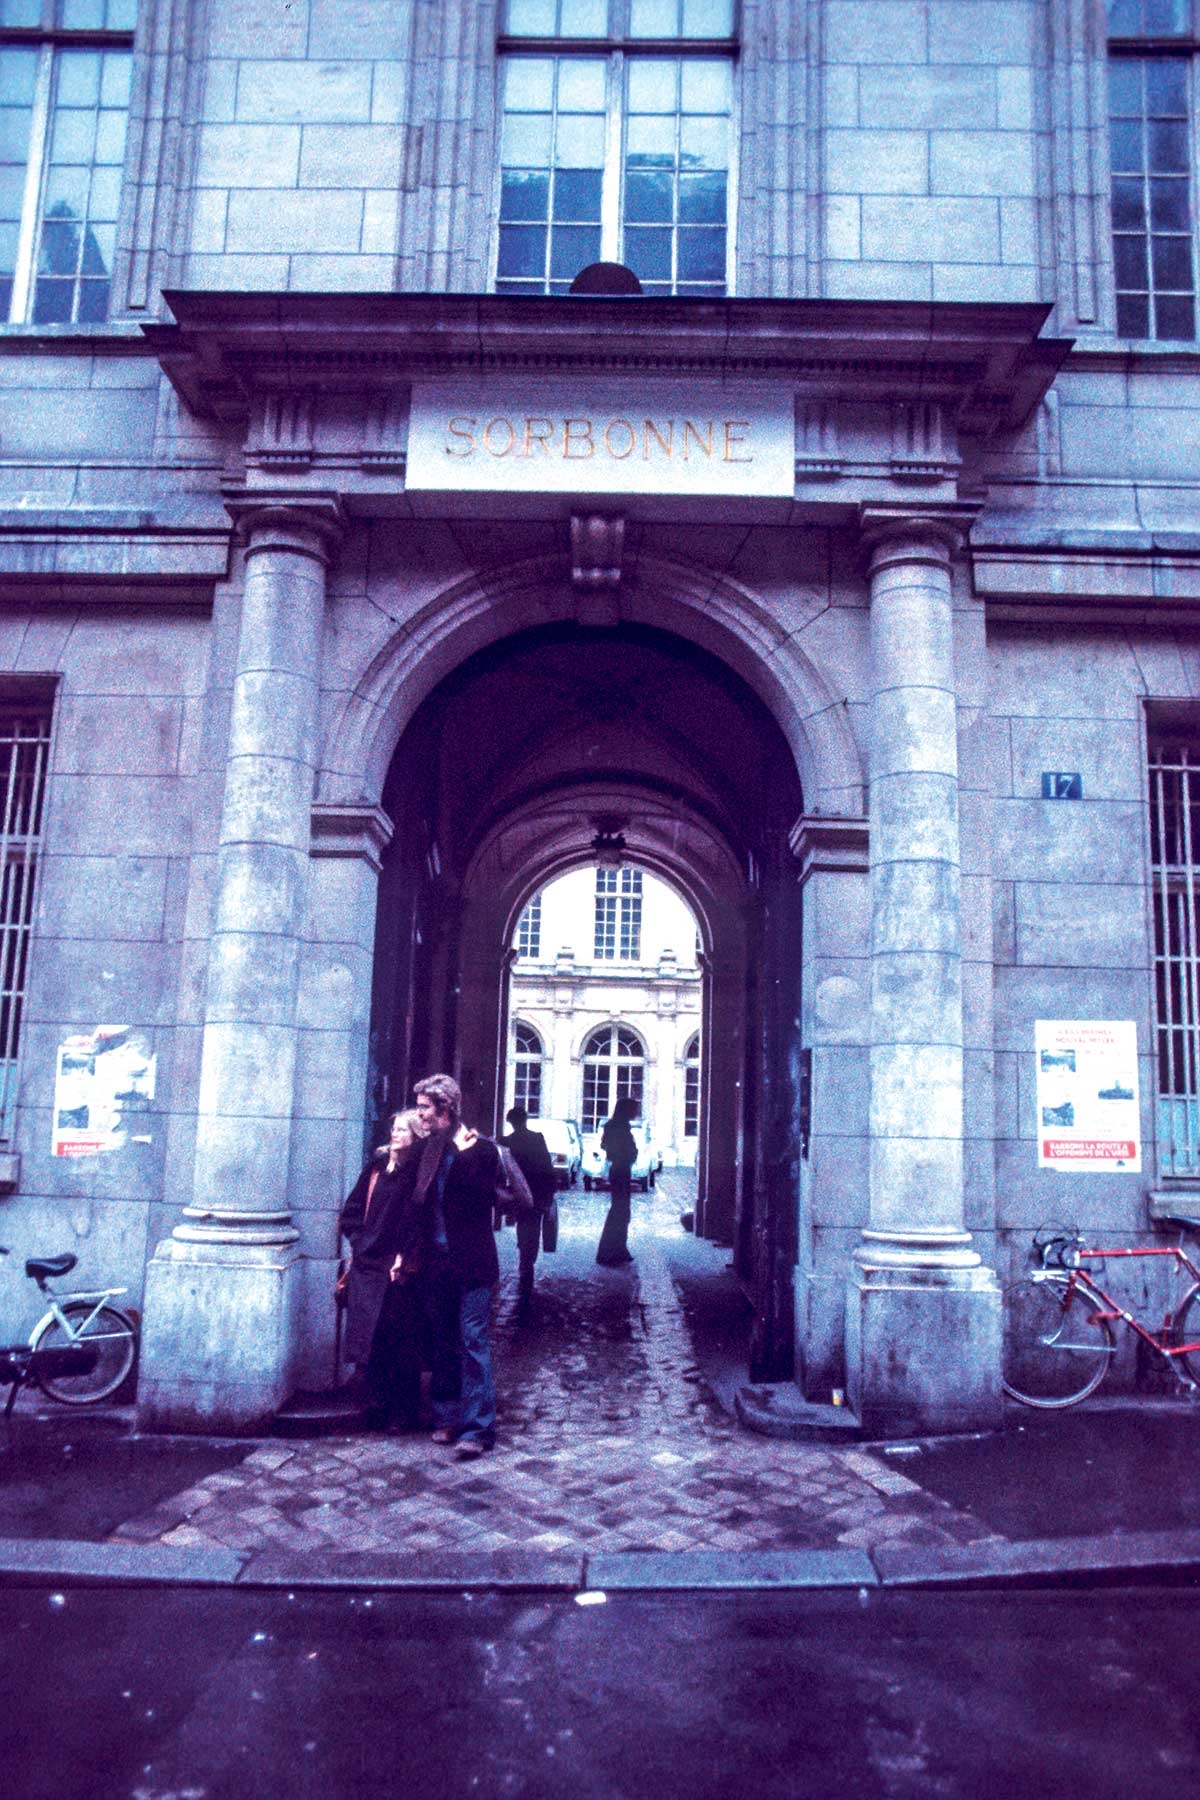 Sorbonne, in den Siebzigern. Die große Pariser Universität bildete unter anderem Michel Foucault und Gilles Deleuze aus, die es dann aber zur Lehre an die Reformuniversität Paris VIII in Saint-Denis zog 